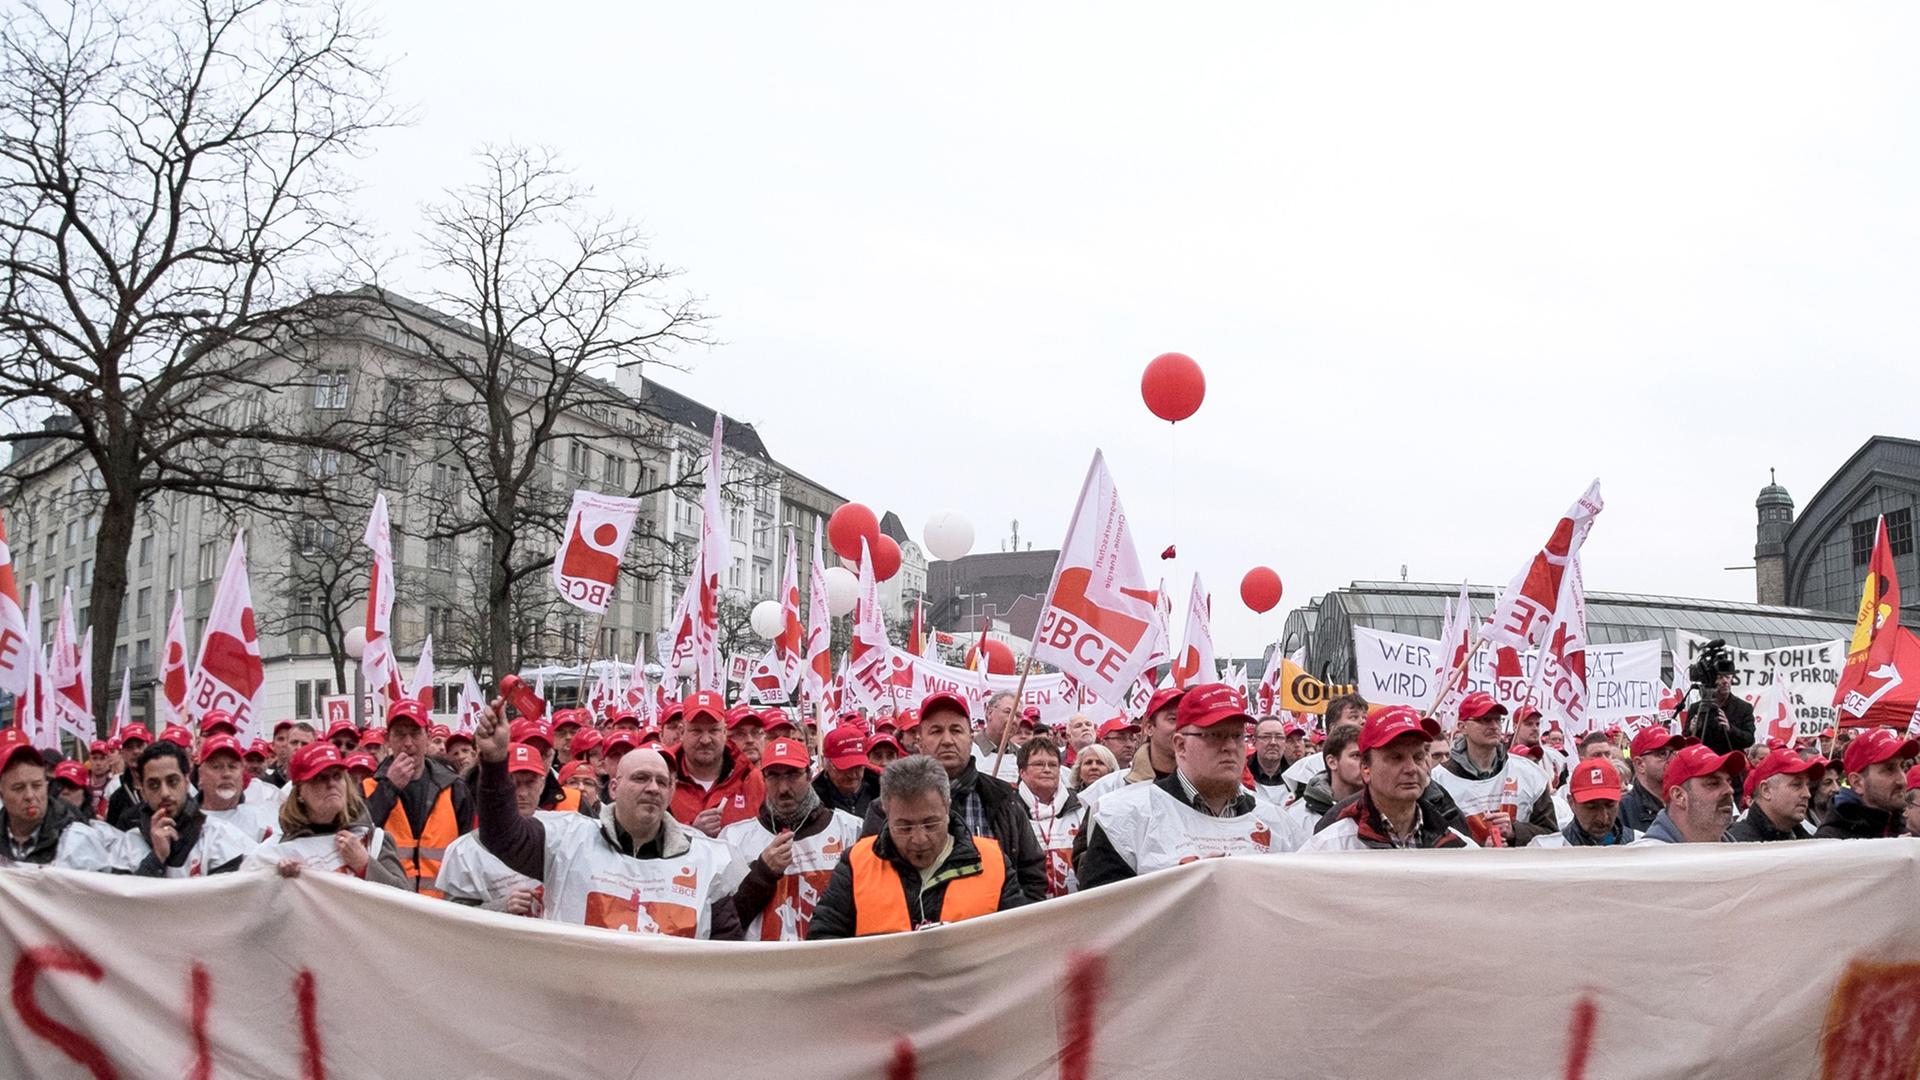 Mitglieder der IG BCE aus Hamburg, Niedersachen und Schleswig-Holstein demonstrieren am 25.03.2015 in Hamburg auf dem Hachmannplatz und halten ein Transparent mit der Aufschrift: "Schluss mit lustig! 4,8 %".